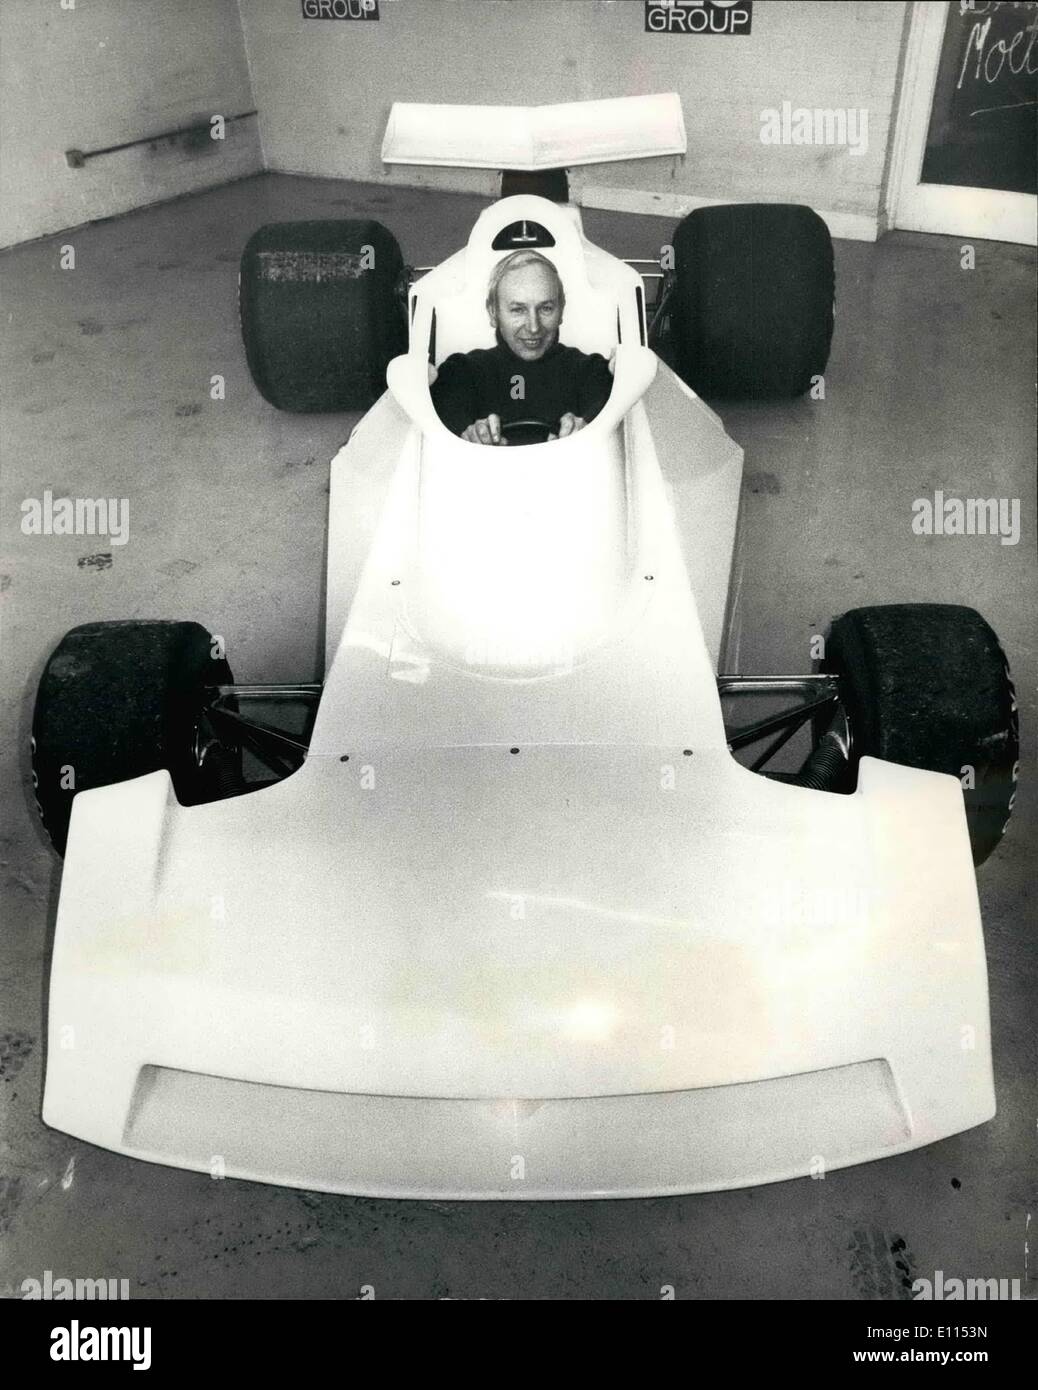 Le 12 décembre 1975 - John Surtees lance son nouveau Grand Prix de voiture : John Surtees les ex-champions du monde pilote de course a montré son nouveau Grand Prix de voiture à son siège de l'équipe de Kent, Canterbury, aujourd'hui. Surtees est excité au sujet de la nouvelle voiture qu'il décrit comme différent de la base de la F1 car il a été l'exécution de cette année et espère que ses négociations avec d'éventuels sponsors se passera bien pour la saison prochaine. Surtees a l'intention de faire fonctionner deux voitures la saison prochaine, avec un pilote britannique et un étranger Banque D'Images